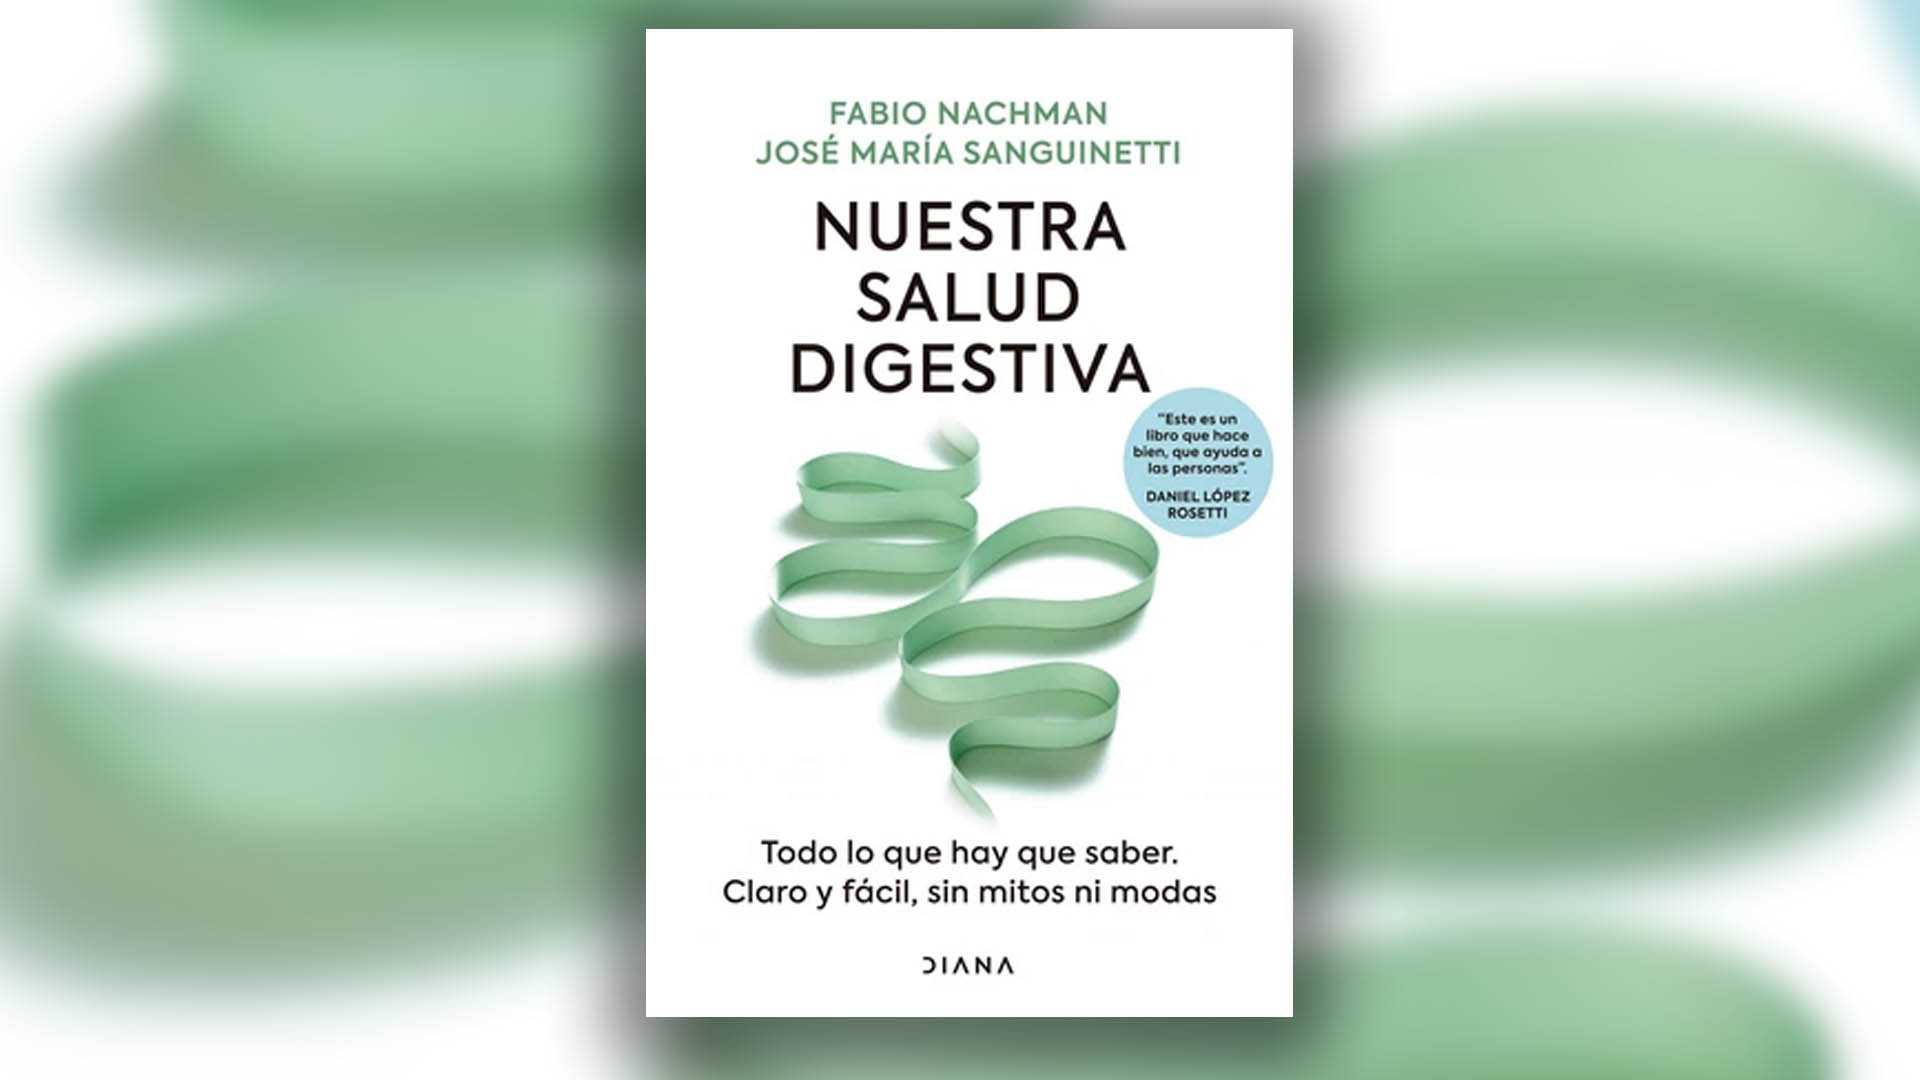 “Nuestra salud digestiva”, de Fabio Nachman y Jose María Sanguinetti.